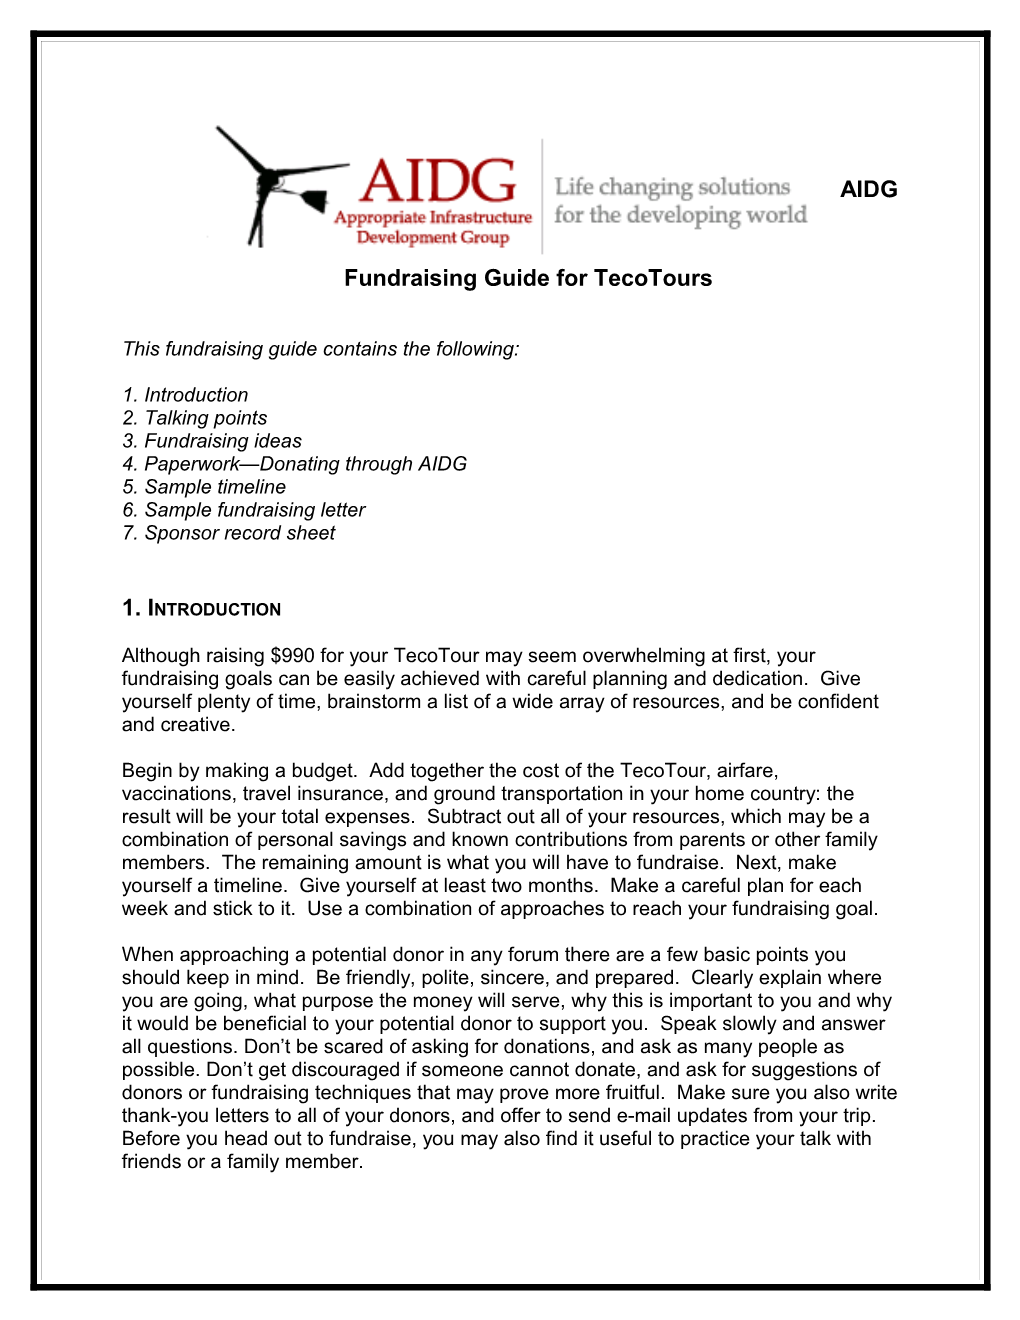 AIDG Fundraising Guide